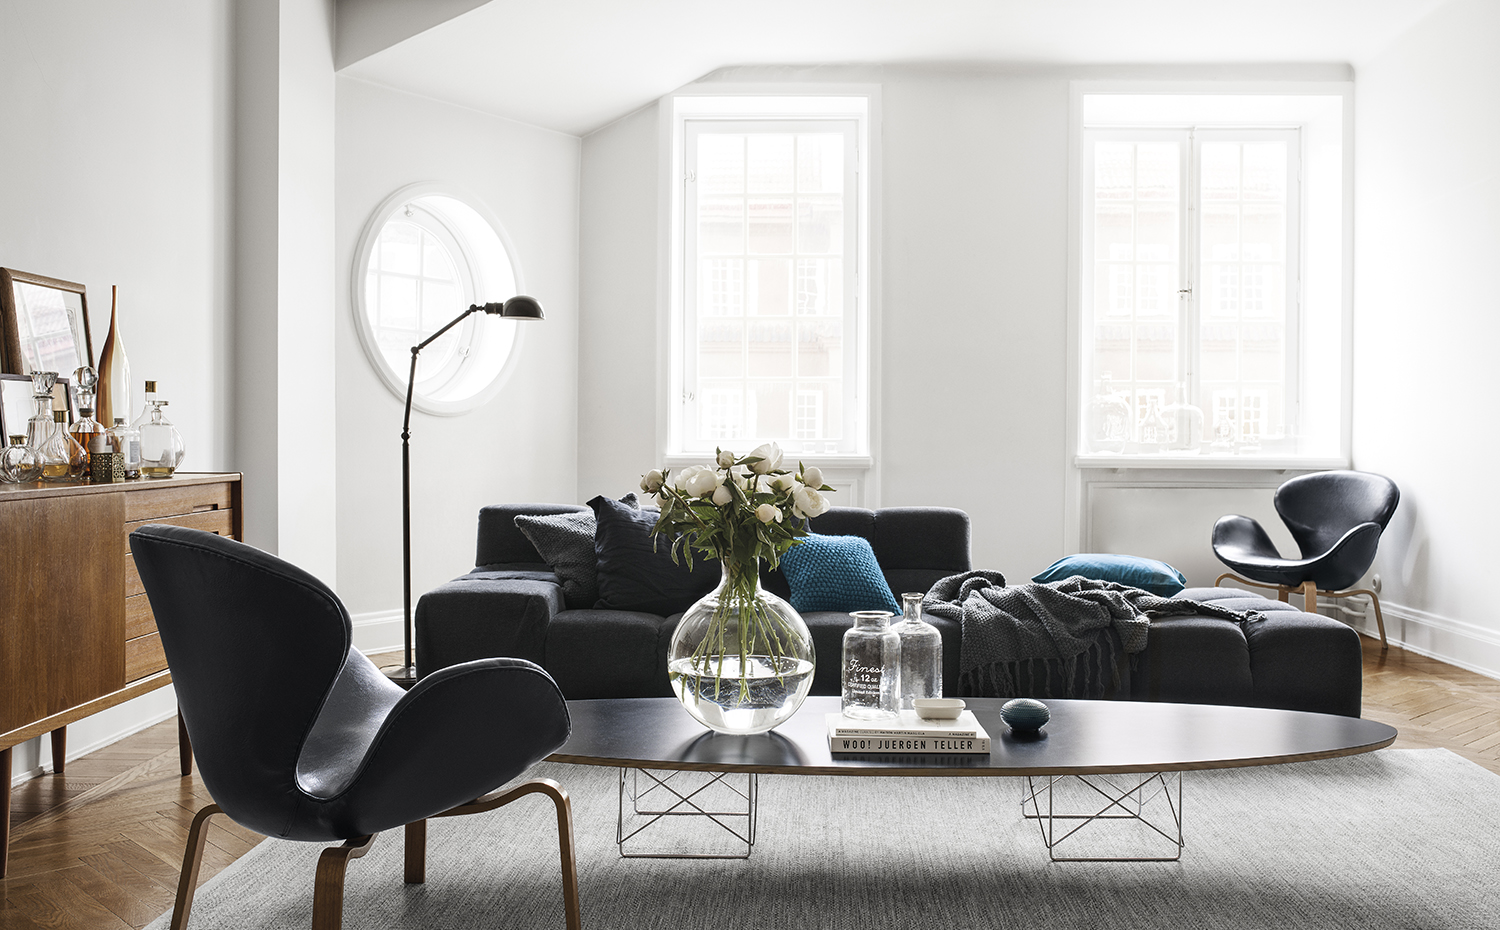 En casa de H&M 11. Butacas Swan, de Arne Jacobsen para Fritz Hansen. La mesa de centro es la Elliptical ETR, de Charles & Ray Eames, editada por Vitra. Sobre el sofá Tufty Time, diseño de Patricia Urquiola para B&B Italia, cojines de H&M